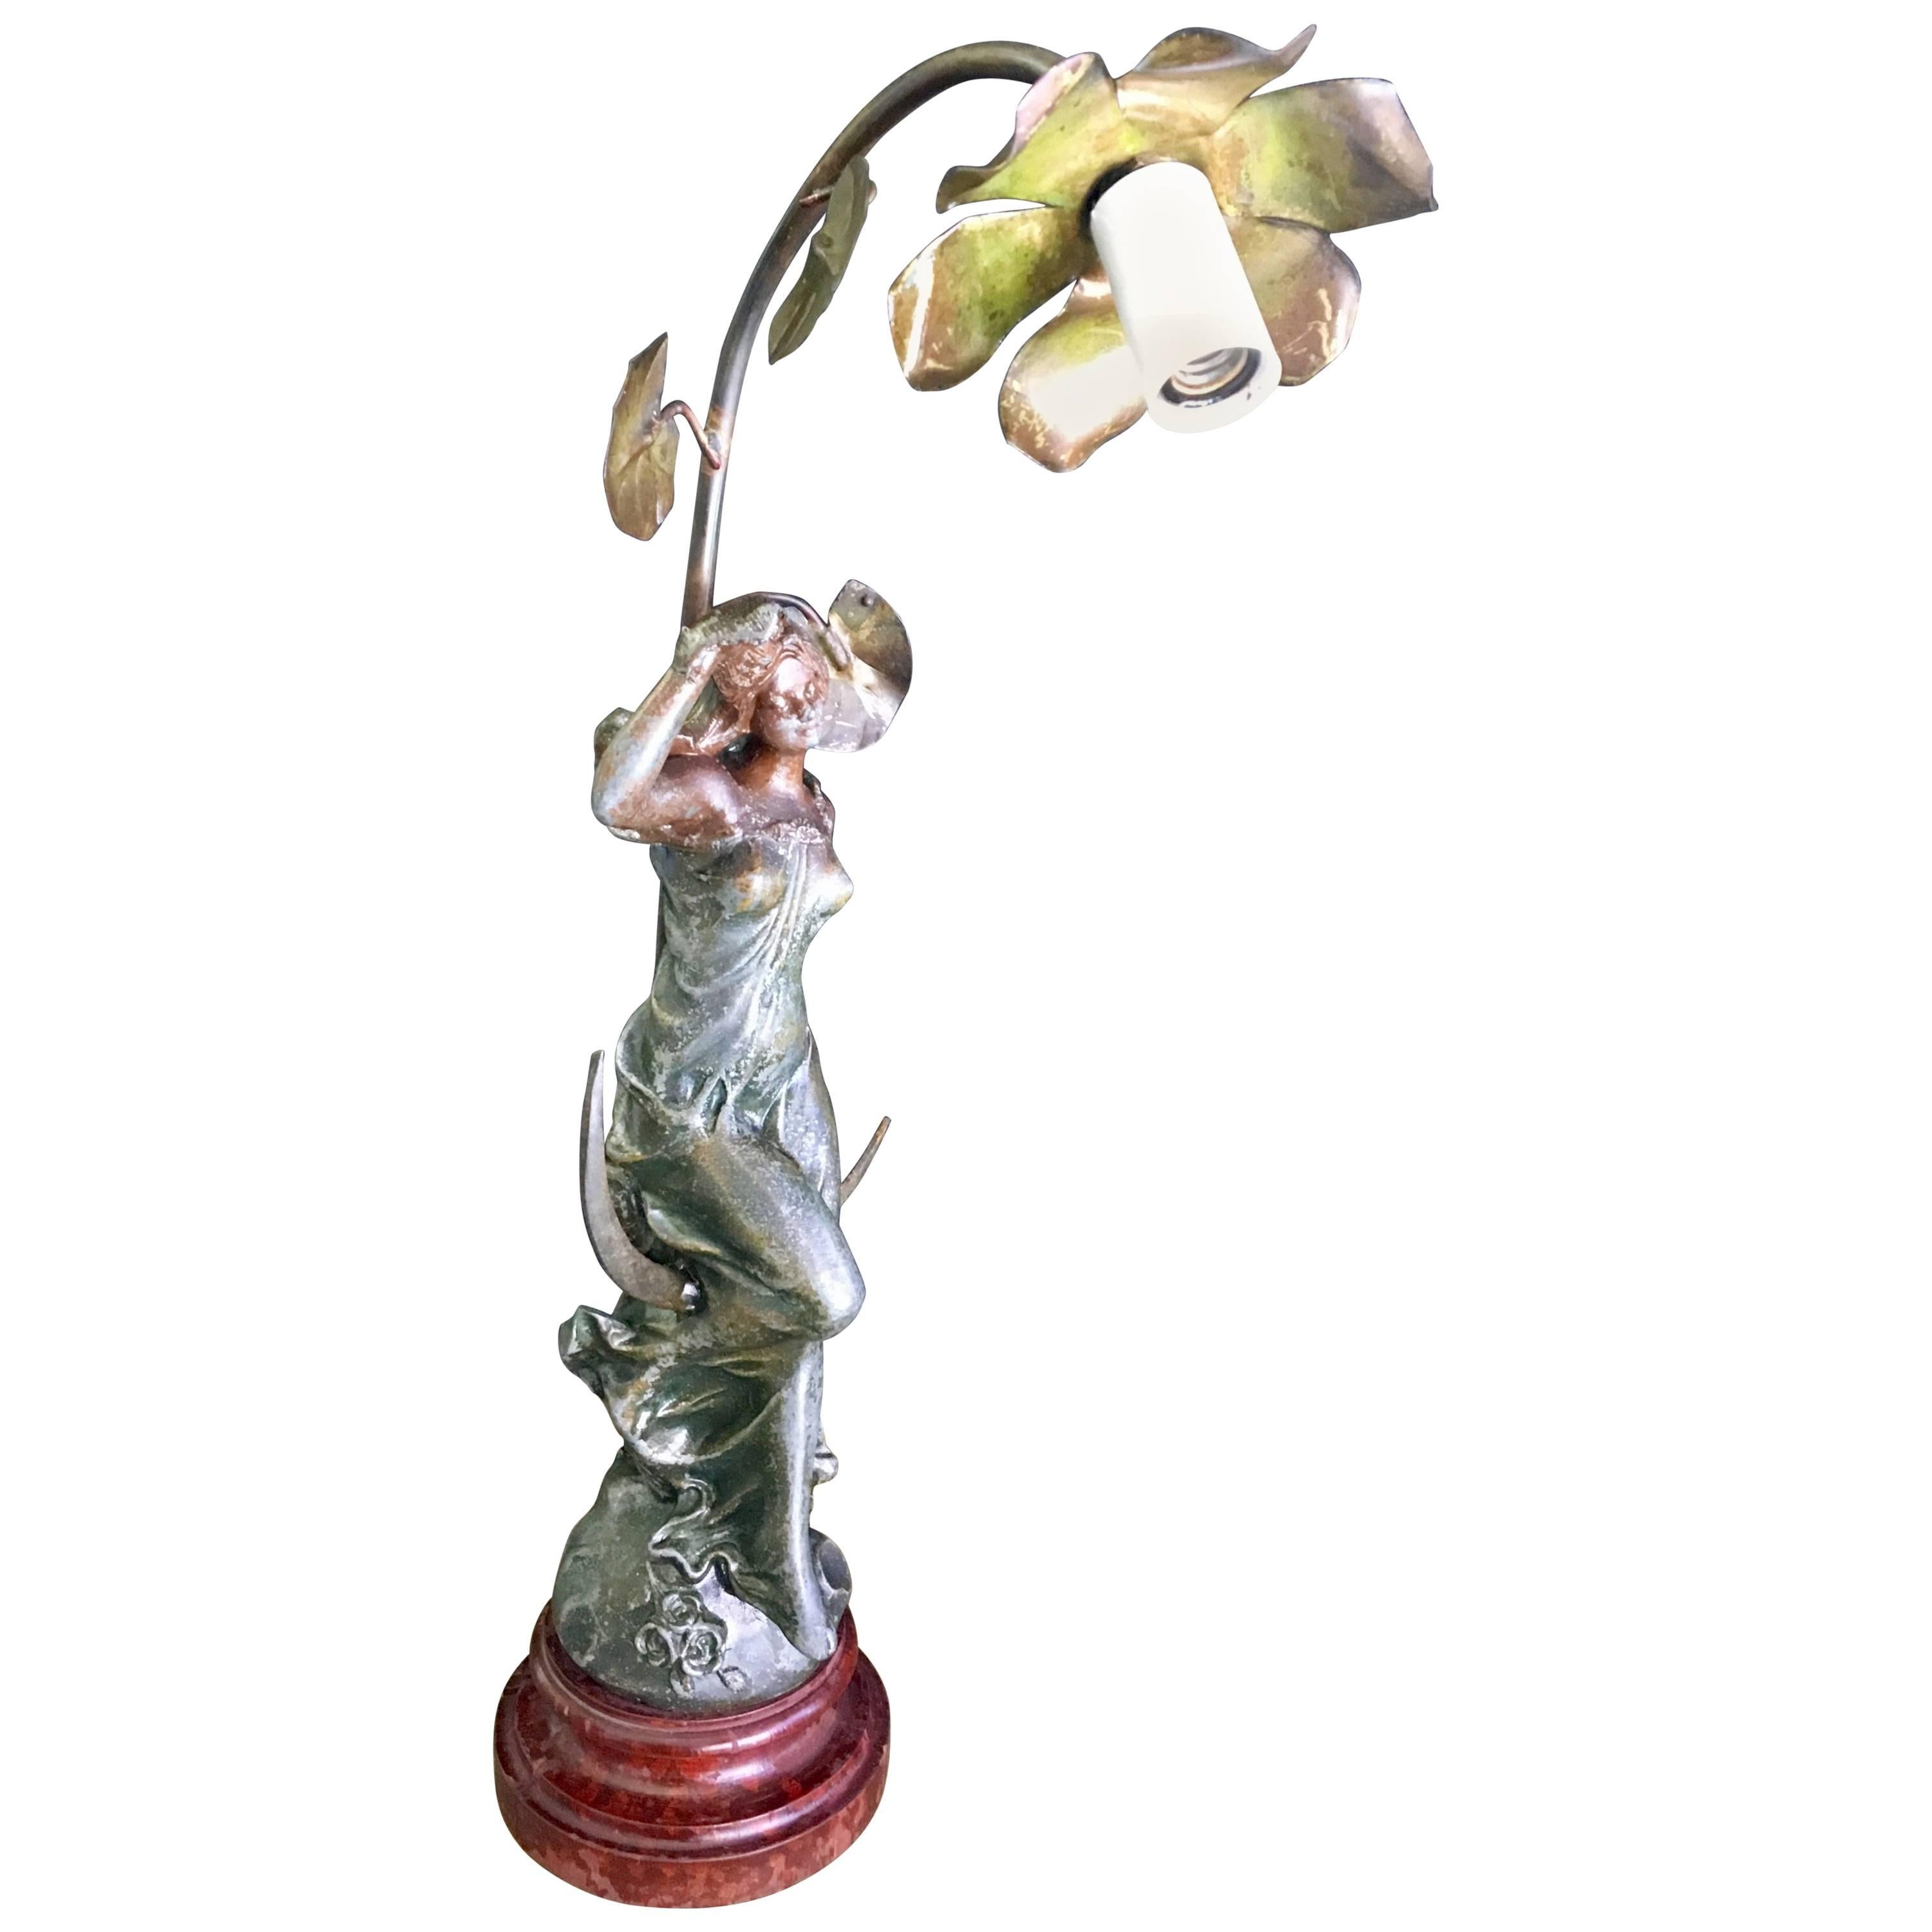 Seltene Jugendstillampe von Francois Moreau in gegossenem Metall und patinierter Bronzeausführung